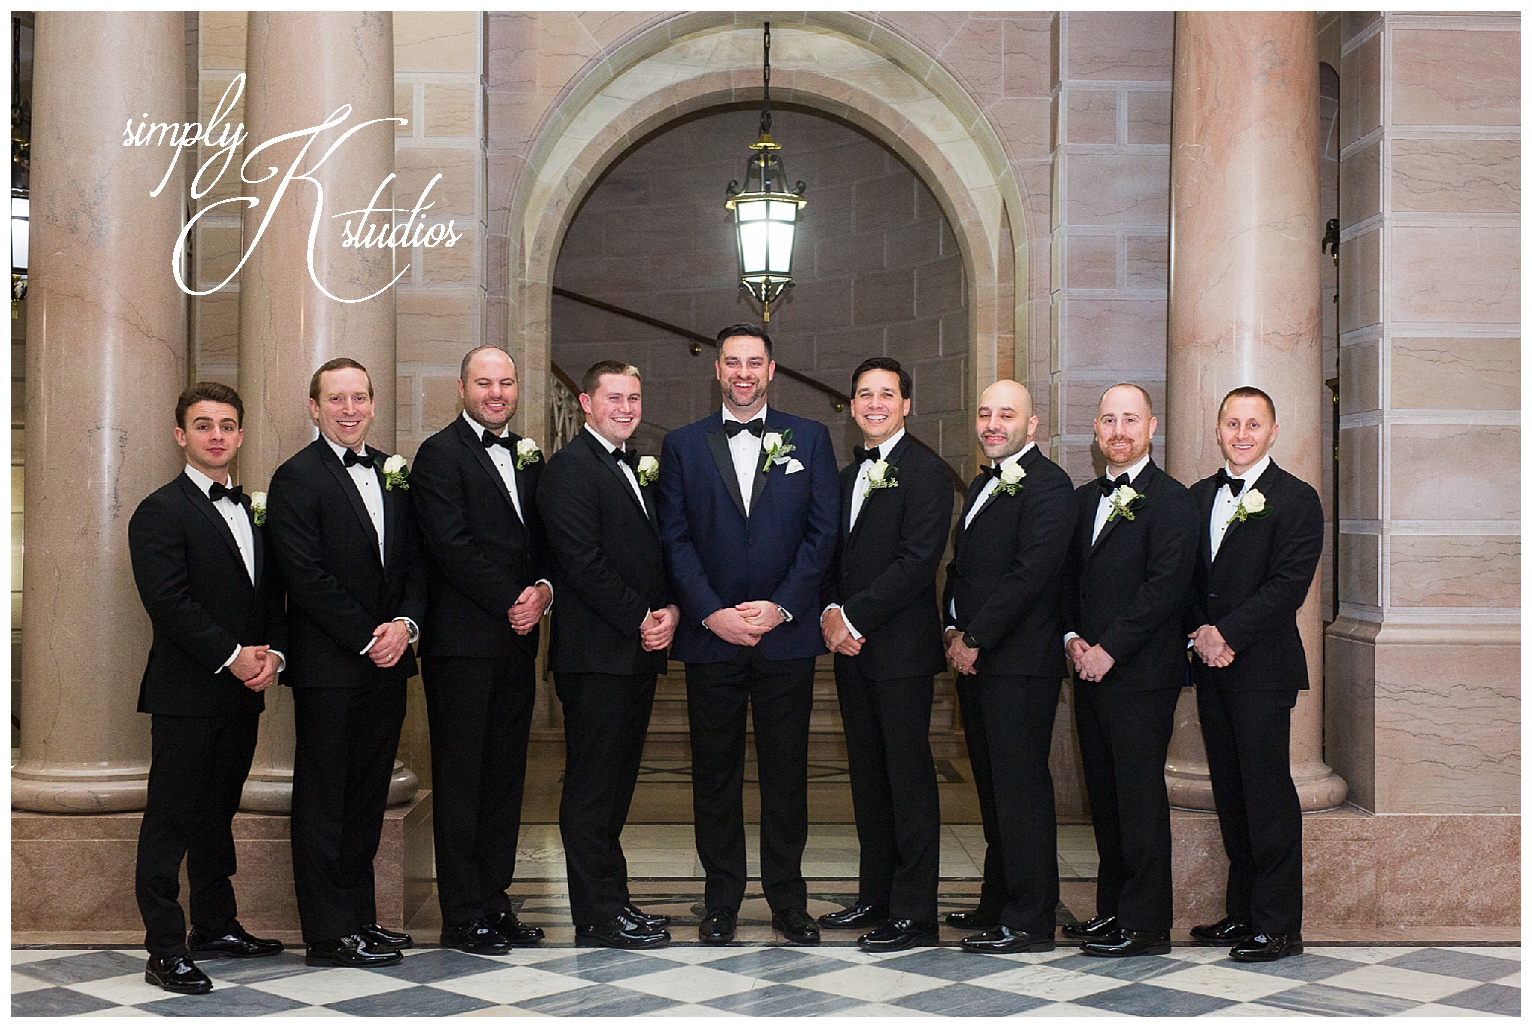 45 Groomsmen at a Black Tie Wedding.jpg